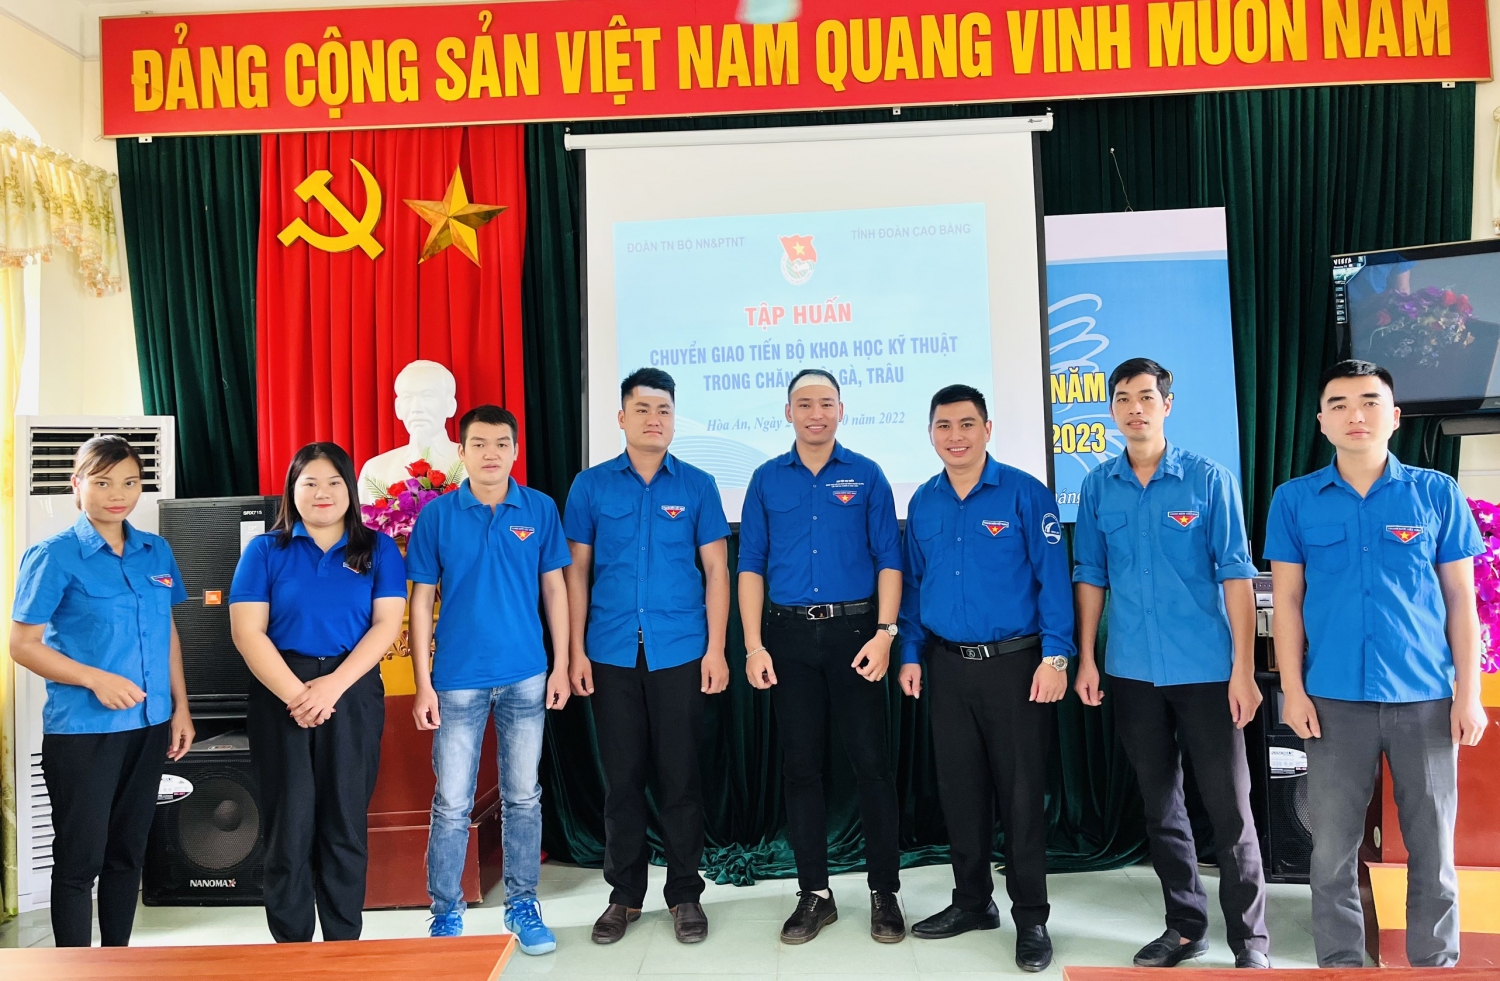 Đc Nguyễn Phạm Trung Nguyên – Phó Bí Thư Chi Đoàn Viện Chăn nuôi và các ĐVTN.